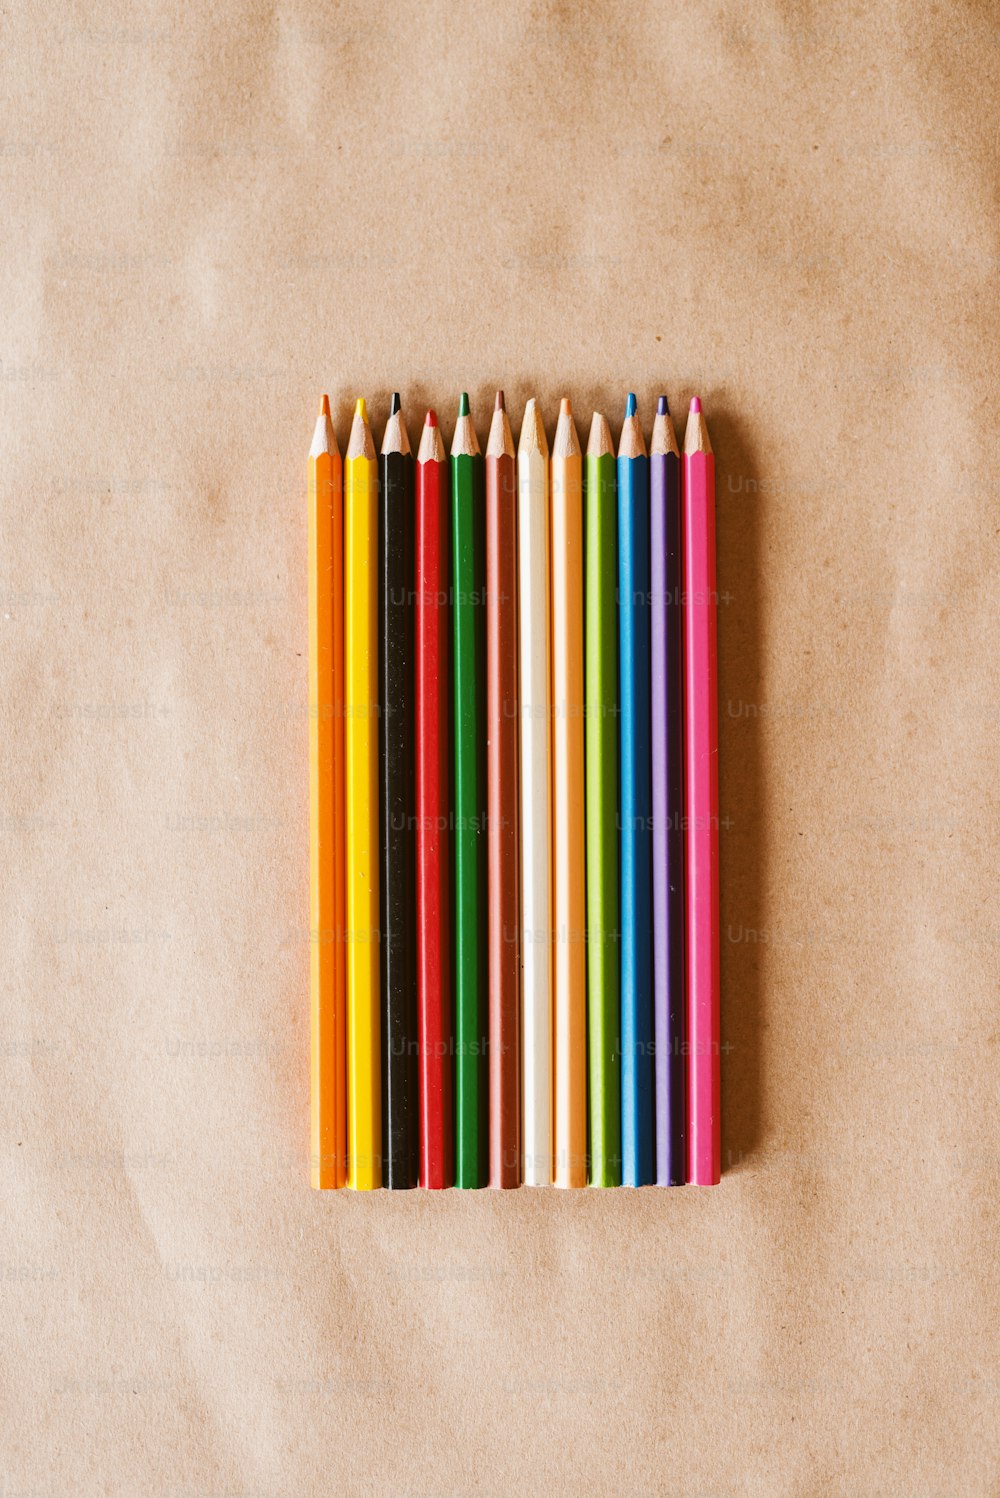 Hilera de lápices de colores de madera sobre el escritorio.